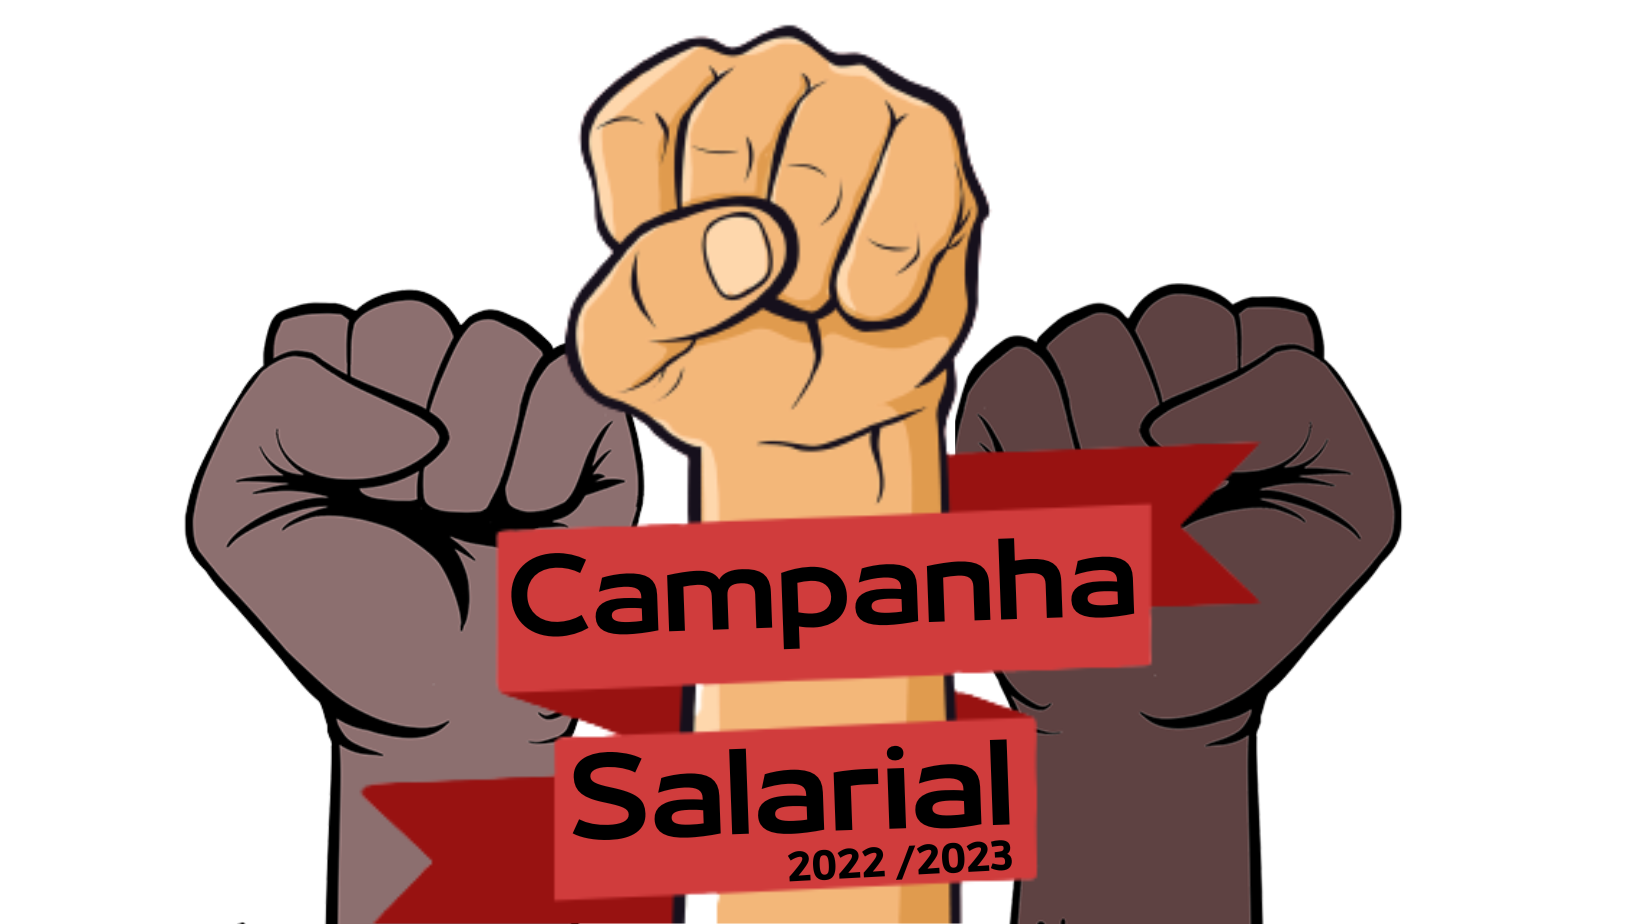 Campanha Salarial 2022